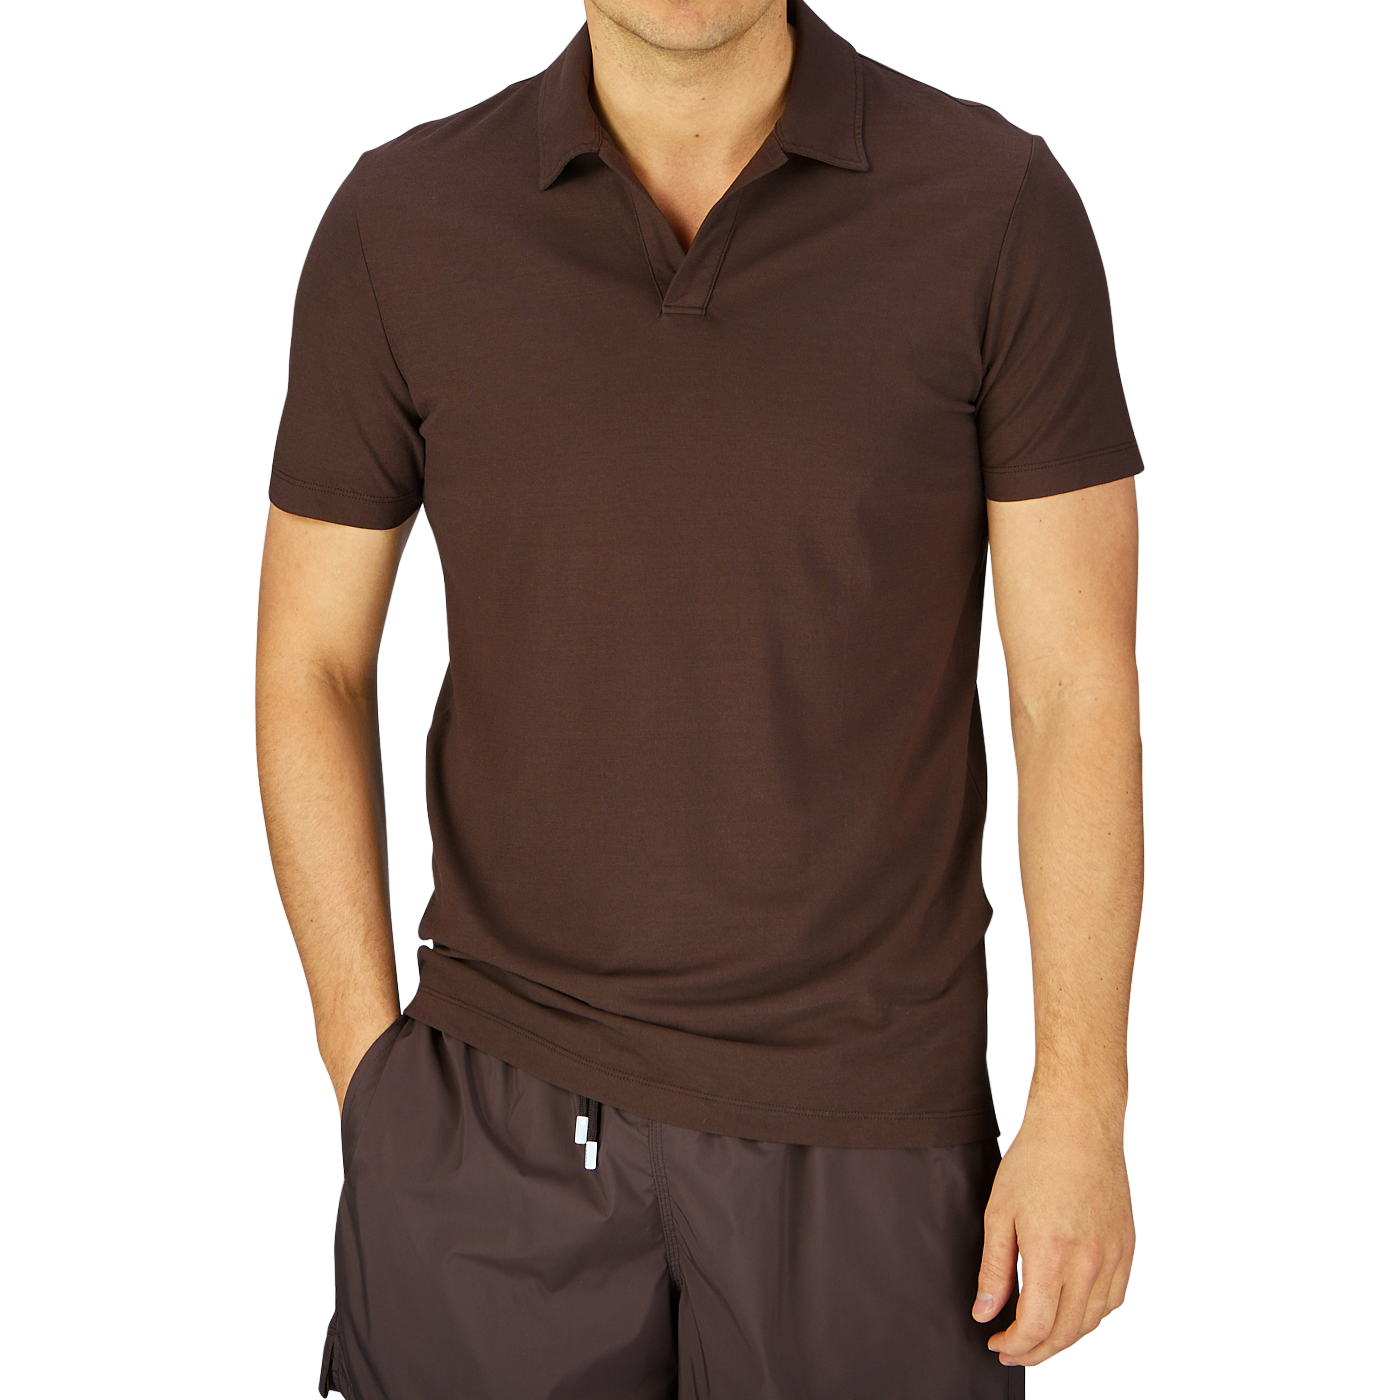 Man wearing an Altea dark brown cotton jersey capri collar polo shirt and dark shorts.